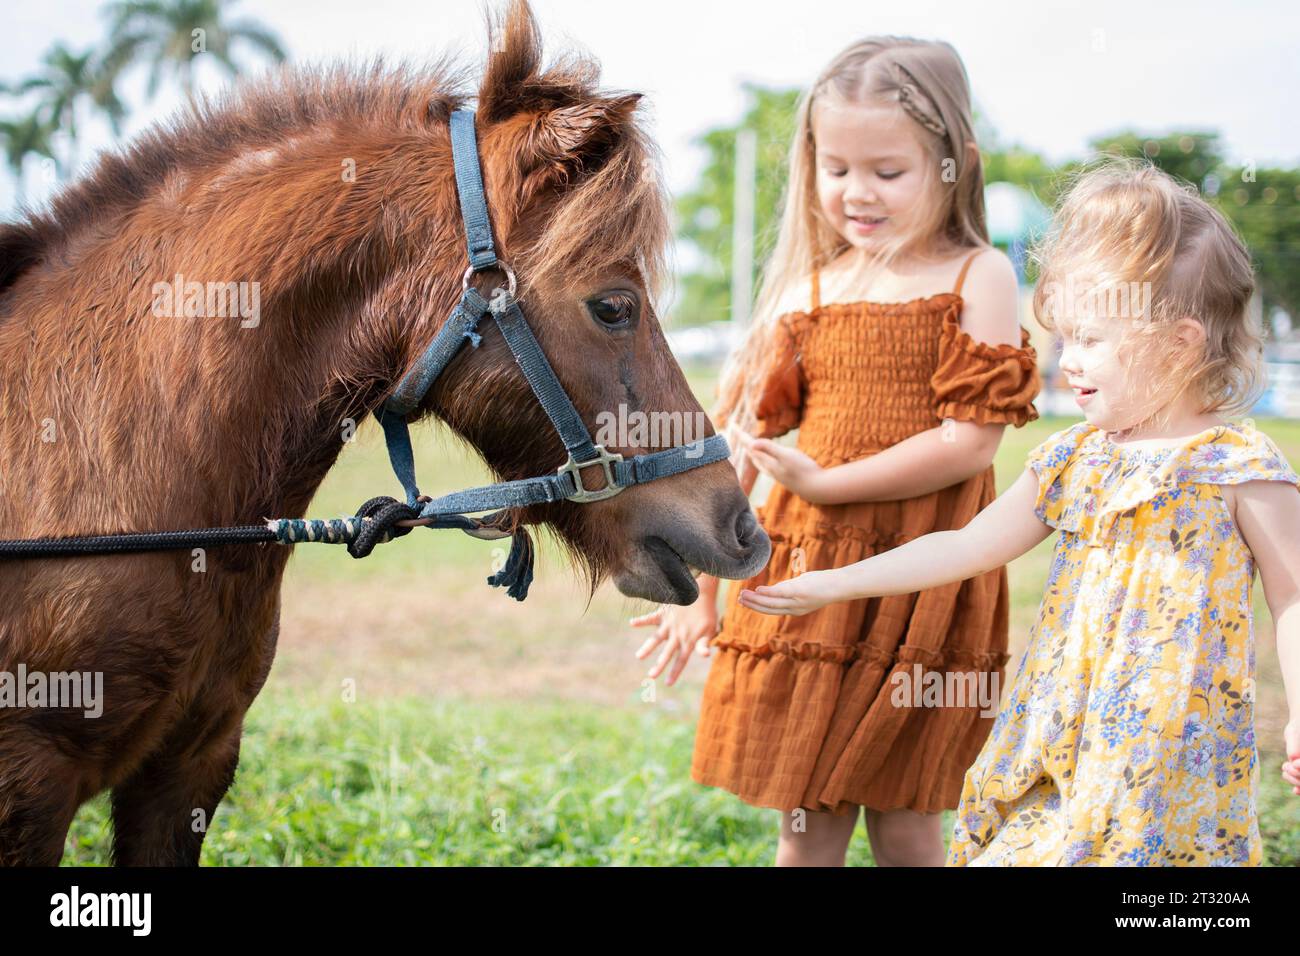 Zwei kleine Mädchen füttern ein Pony. Bauernhof und Kinder. Herbstspaß-Aktivitäten für Kinder auf dem Bauernhof. Fütterung von Nutztieren. Stockfoto